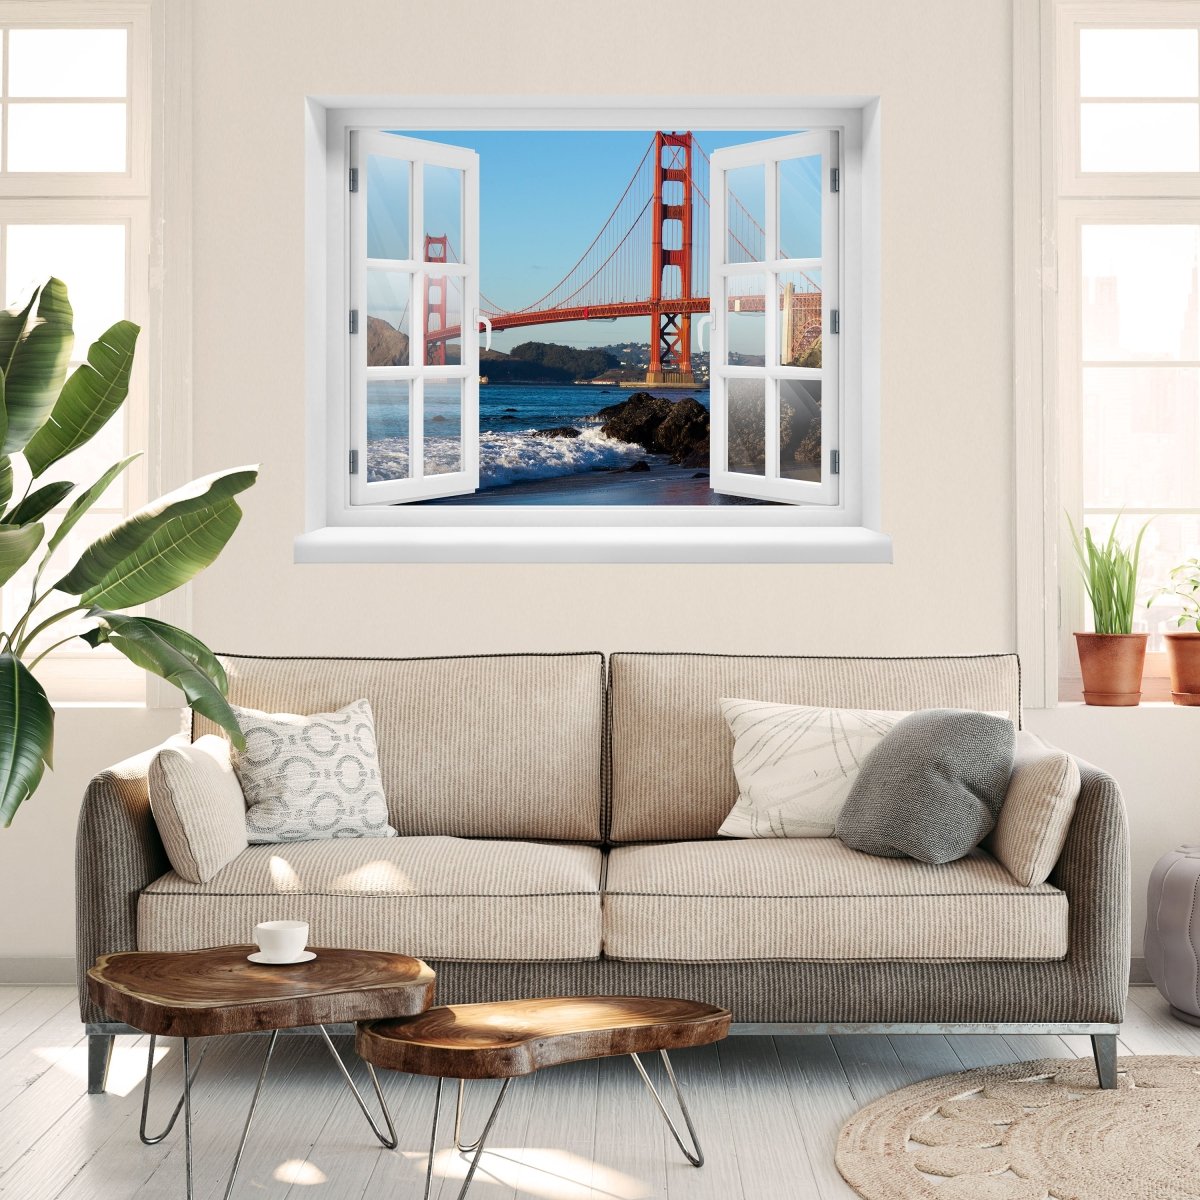 3D Wall Sticker Golden Gate Bridge - Wall Decal M0805